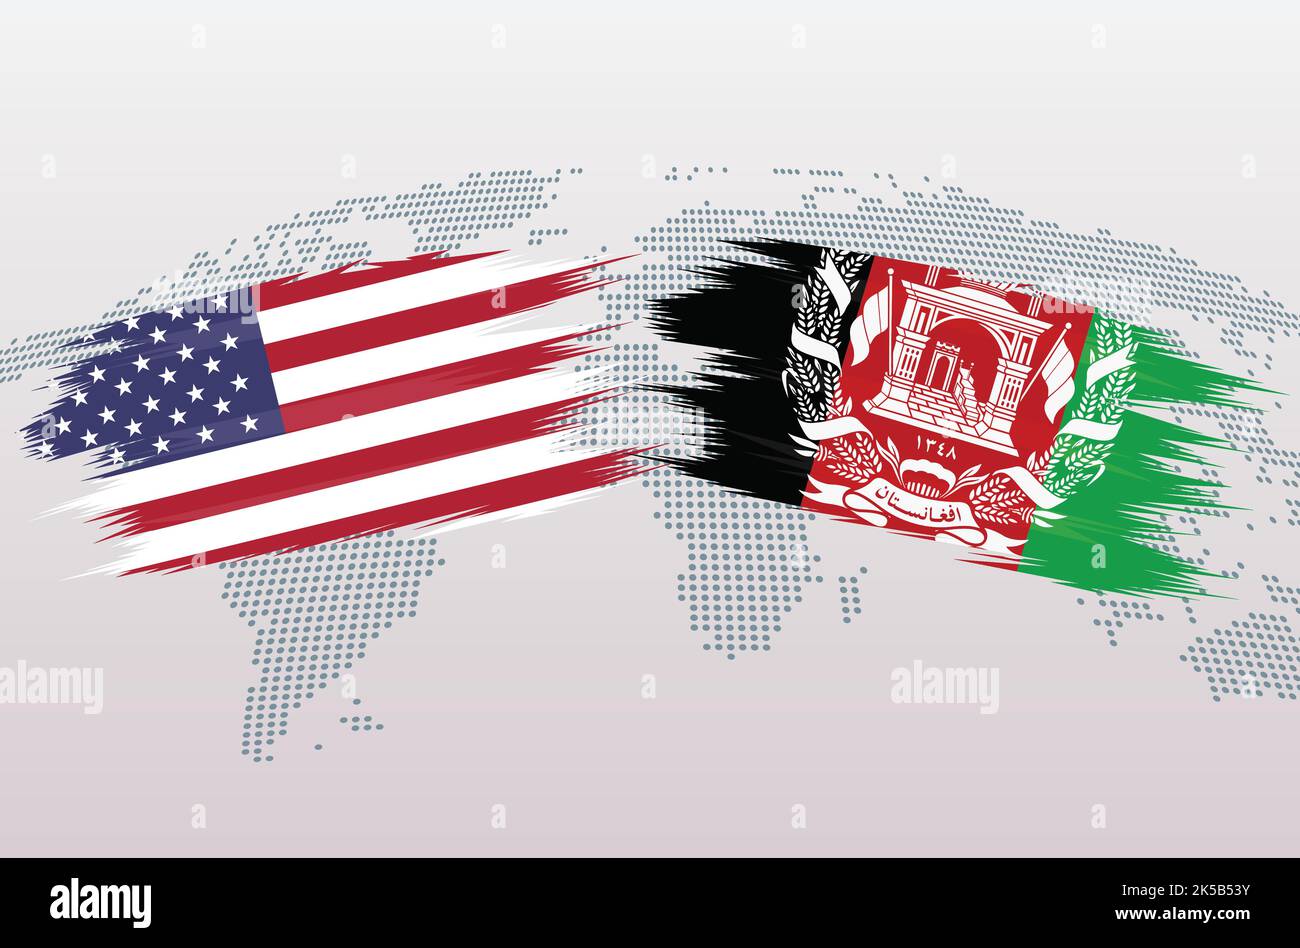 Bandiere USA vs Afghanistan. Le bandiere degli Stati Uniti d'America VS afghani, isolate su sfondo grigio della mappa del mondo. Illustrazione vettoriale. Illustrazione Vettoriale